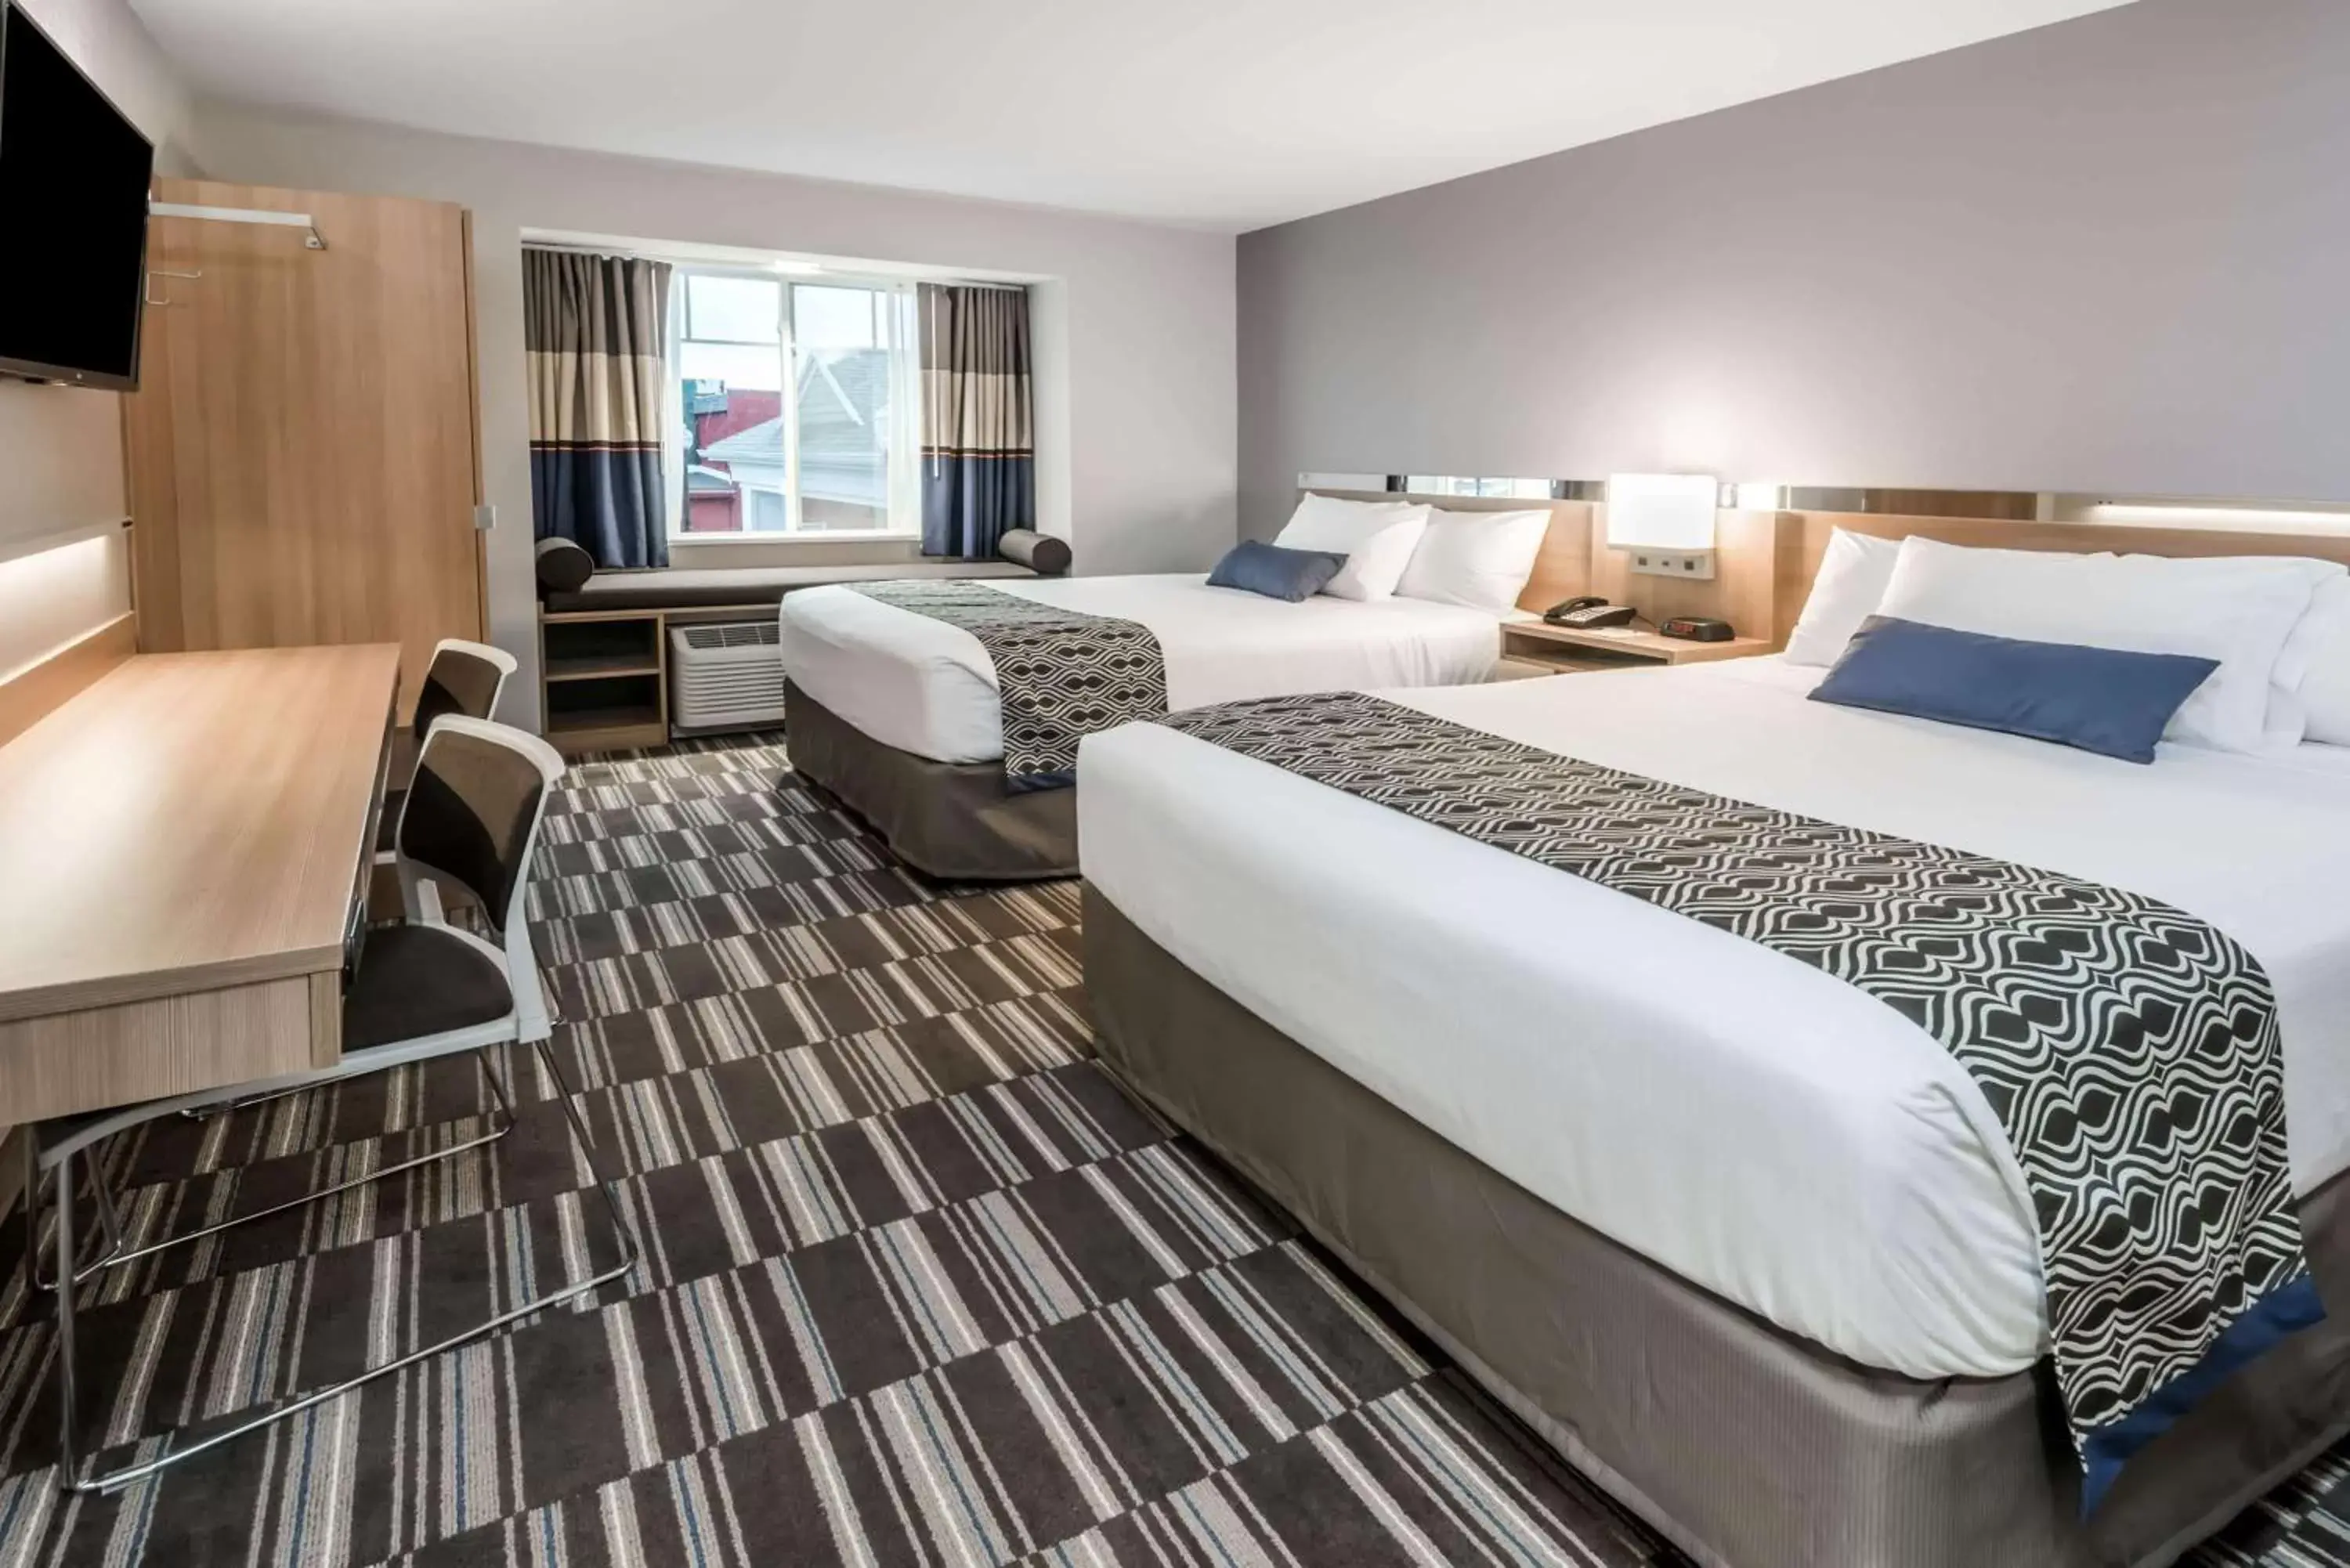 Bedroom in Microtel Inn & Suites by Wyndham - Penn Yan